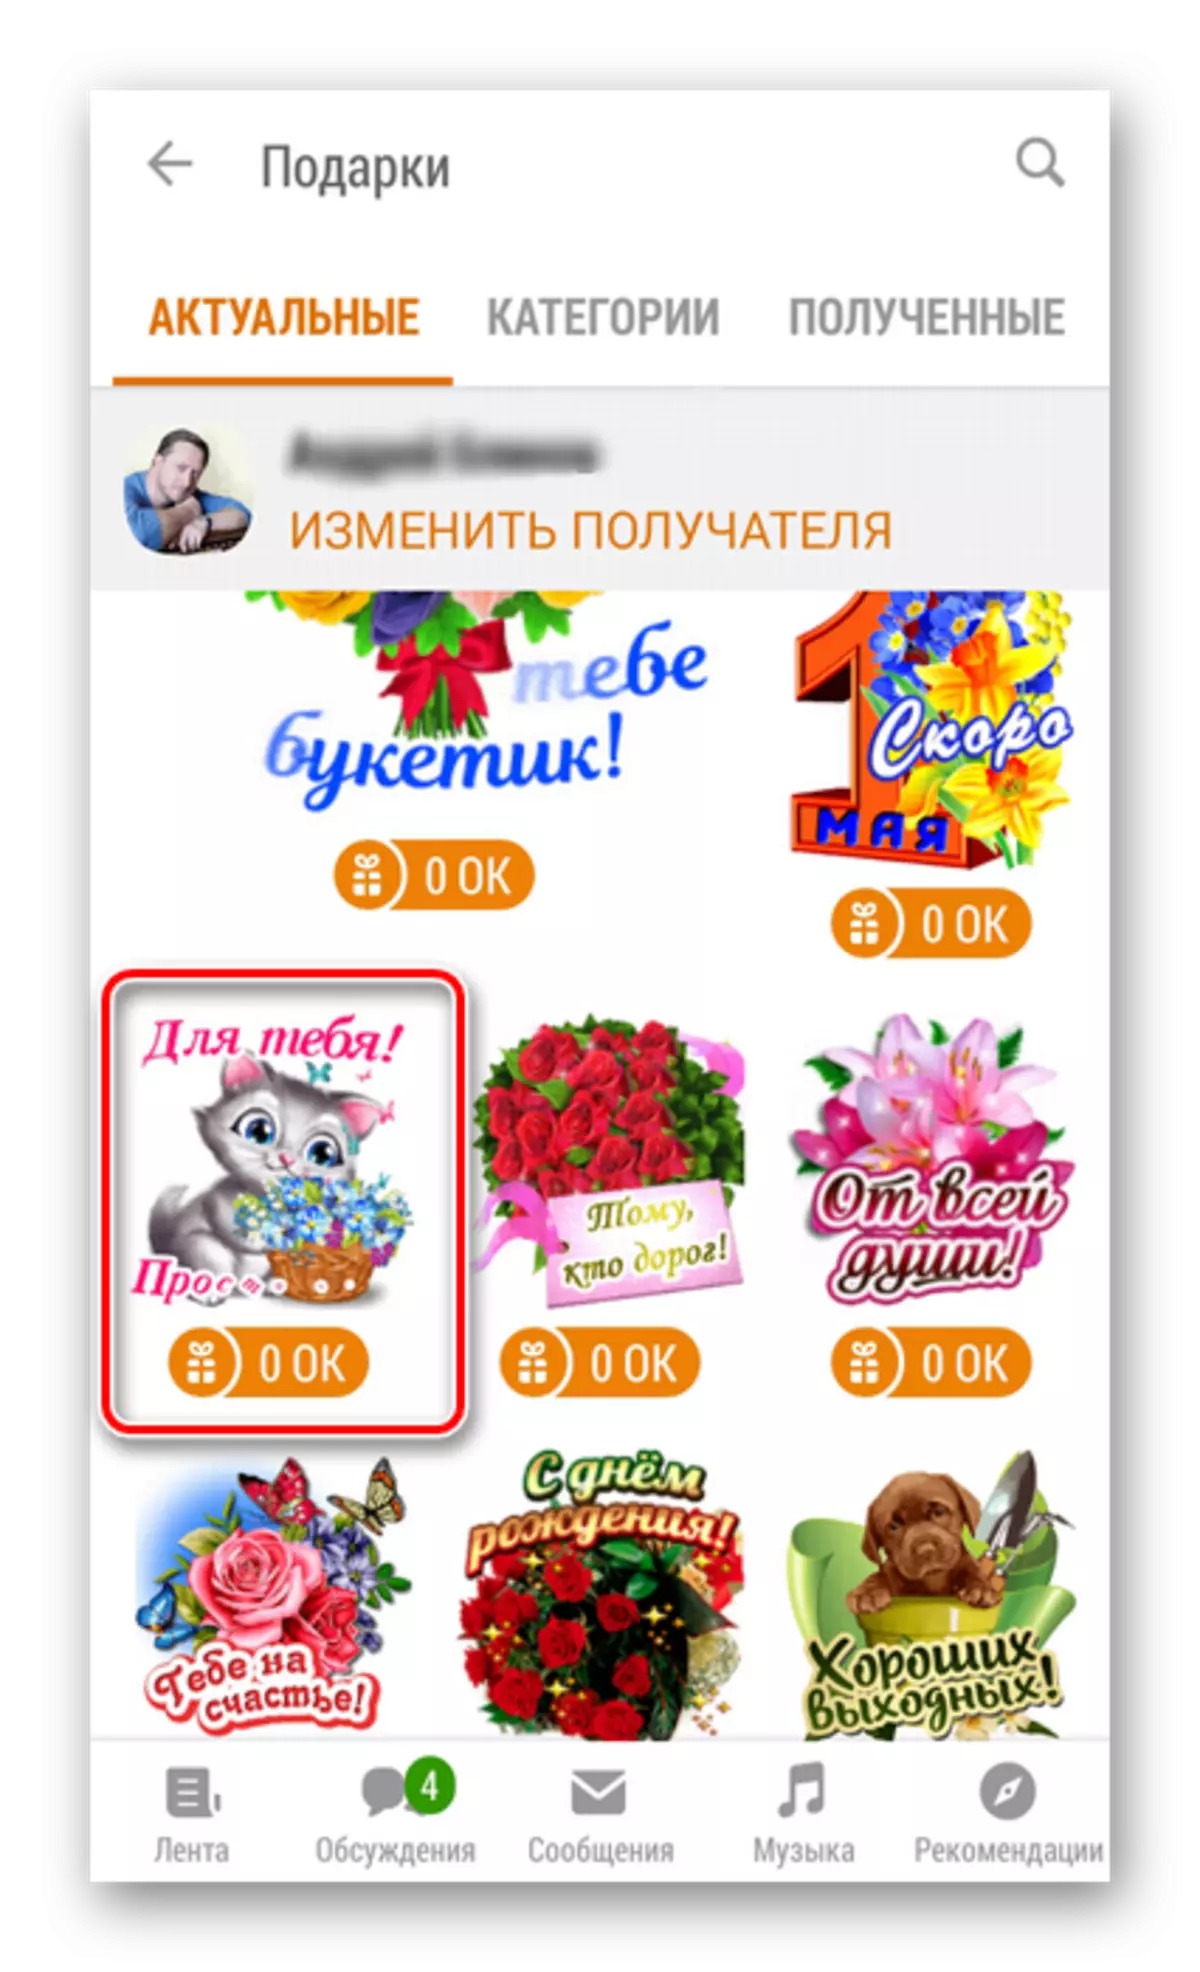 Cadeaux dans Apps Odnoklassniki